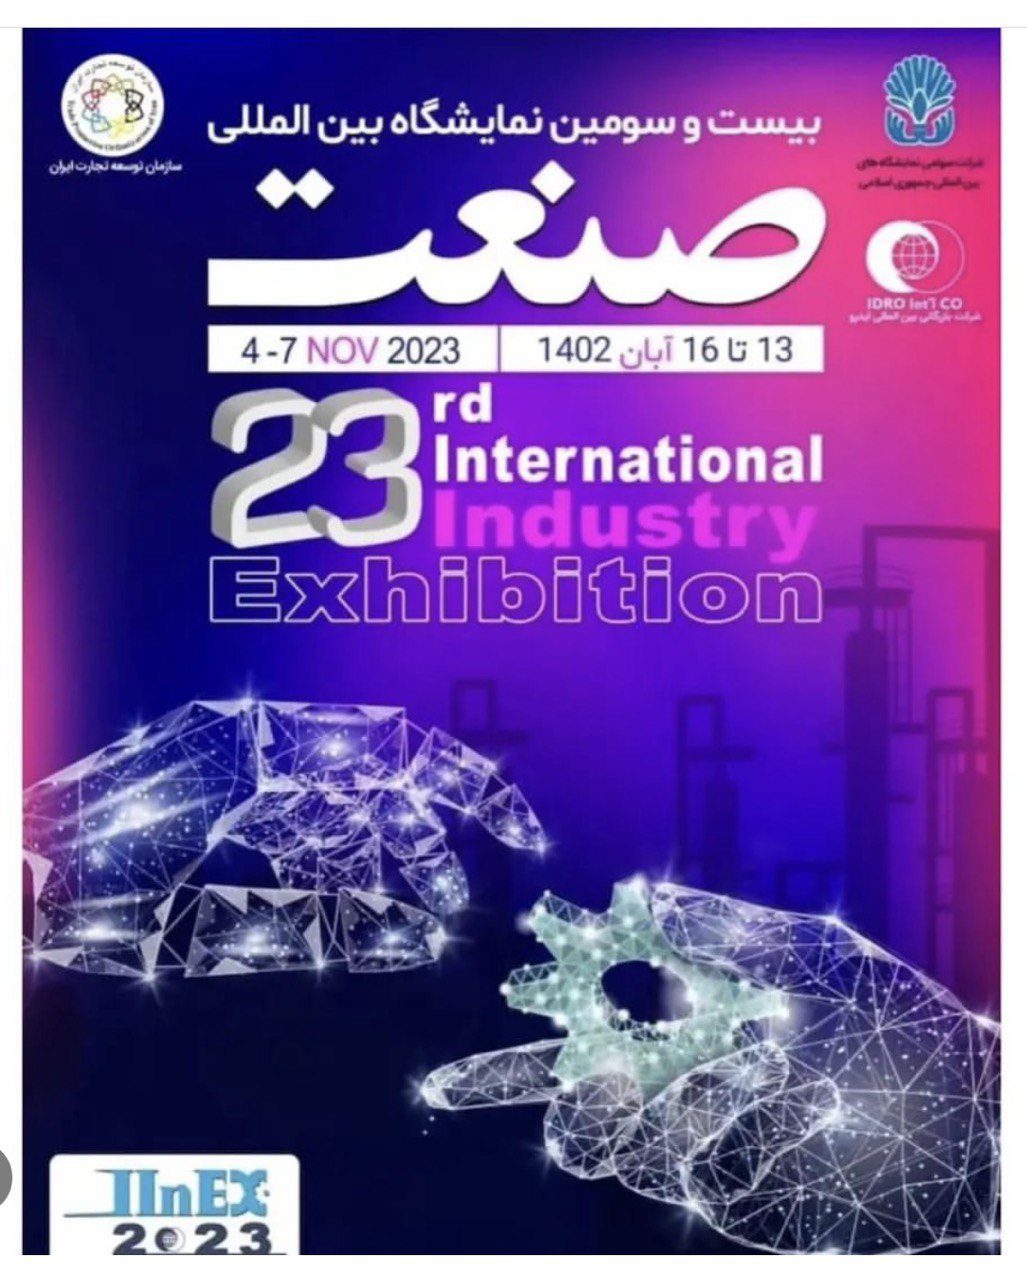 بیست و سومین نمایشگاه بین المللی صنعت تهران ۱۴۰۲